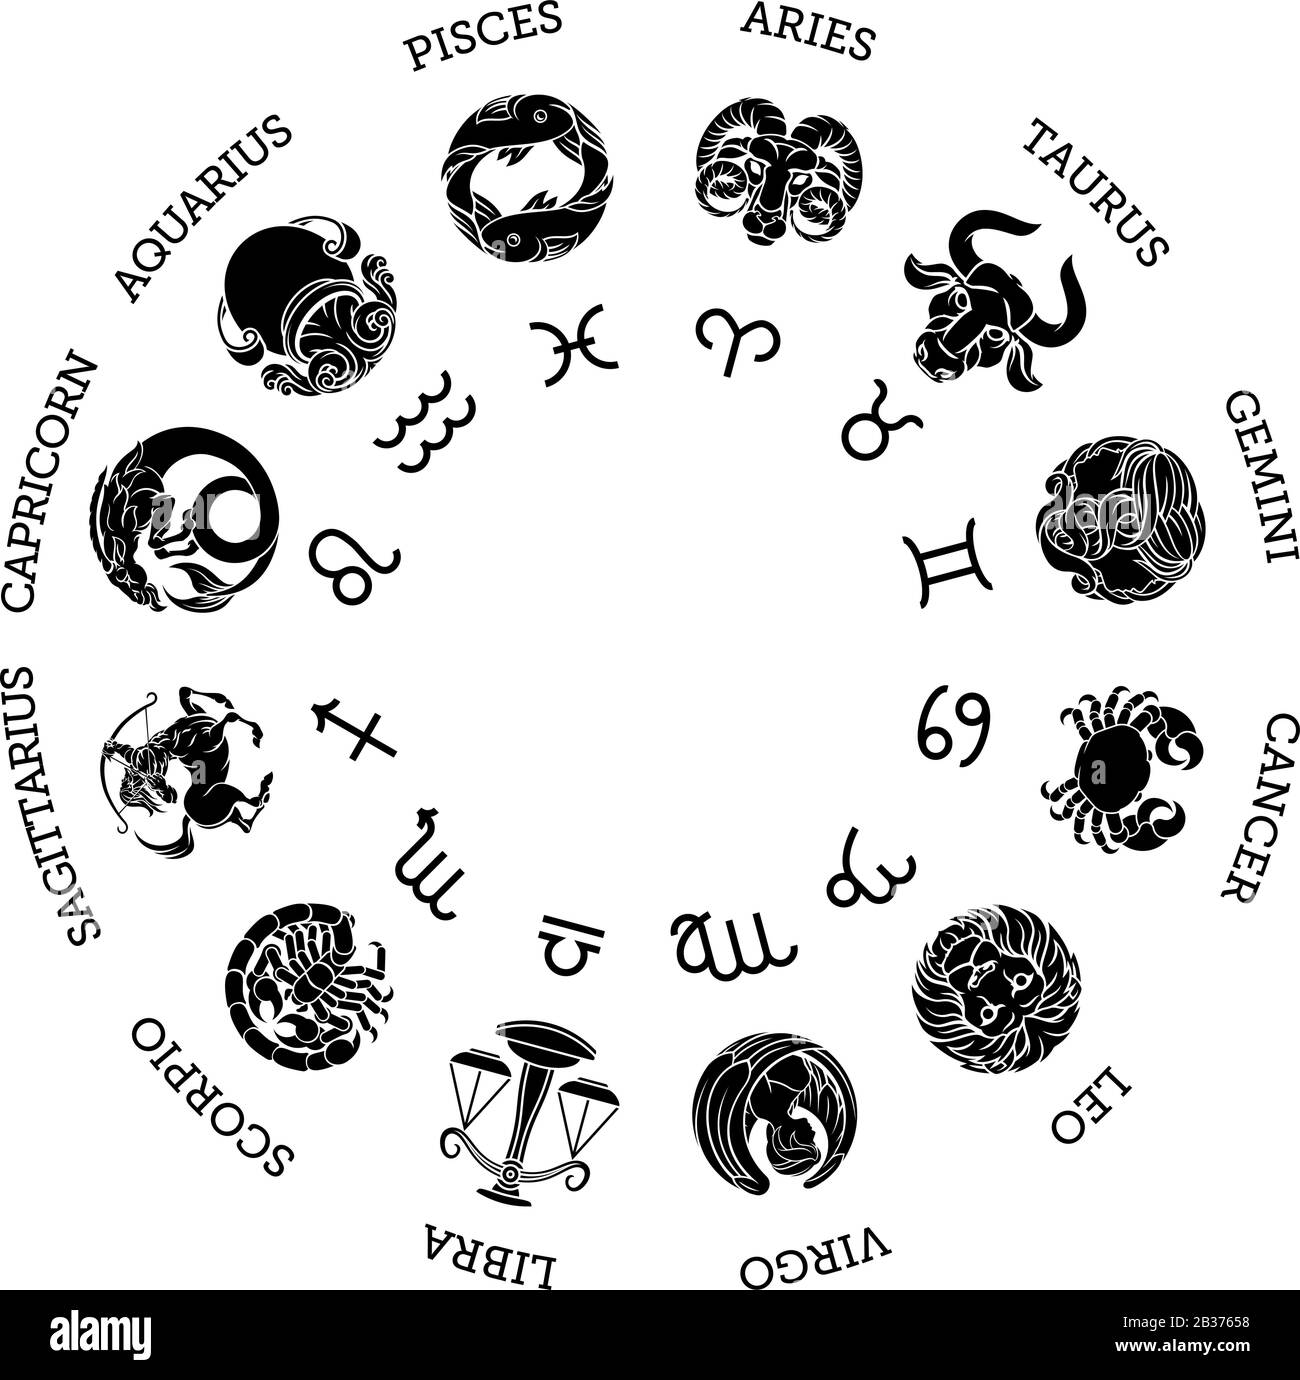 Simboli dei segni astrologici dell'oroscopo zodiacale astrologico Illustrazione Vettoriale